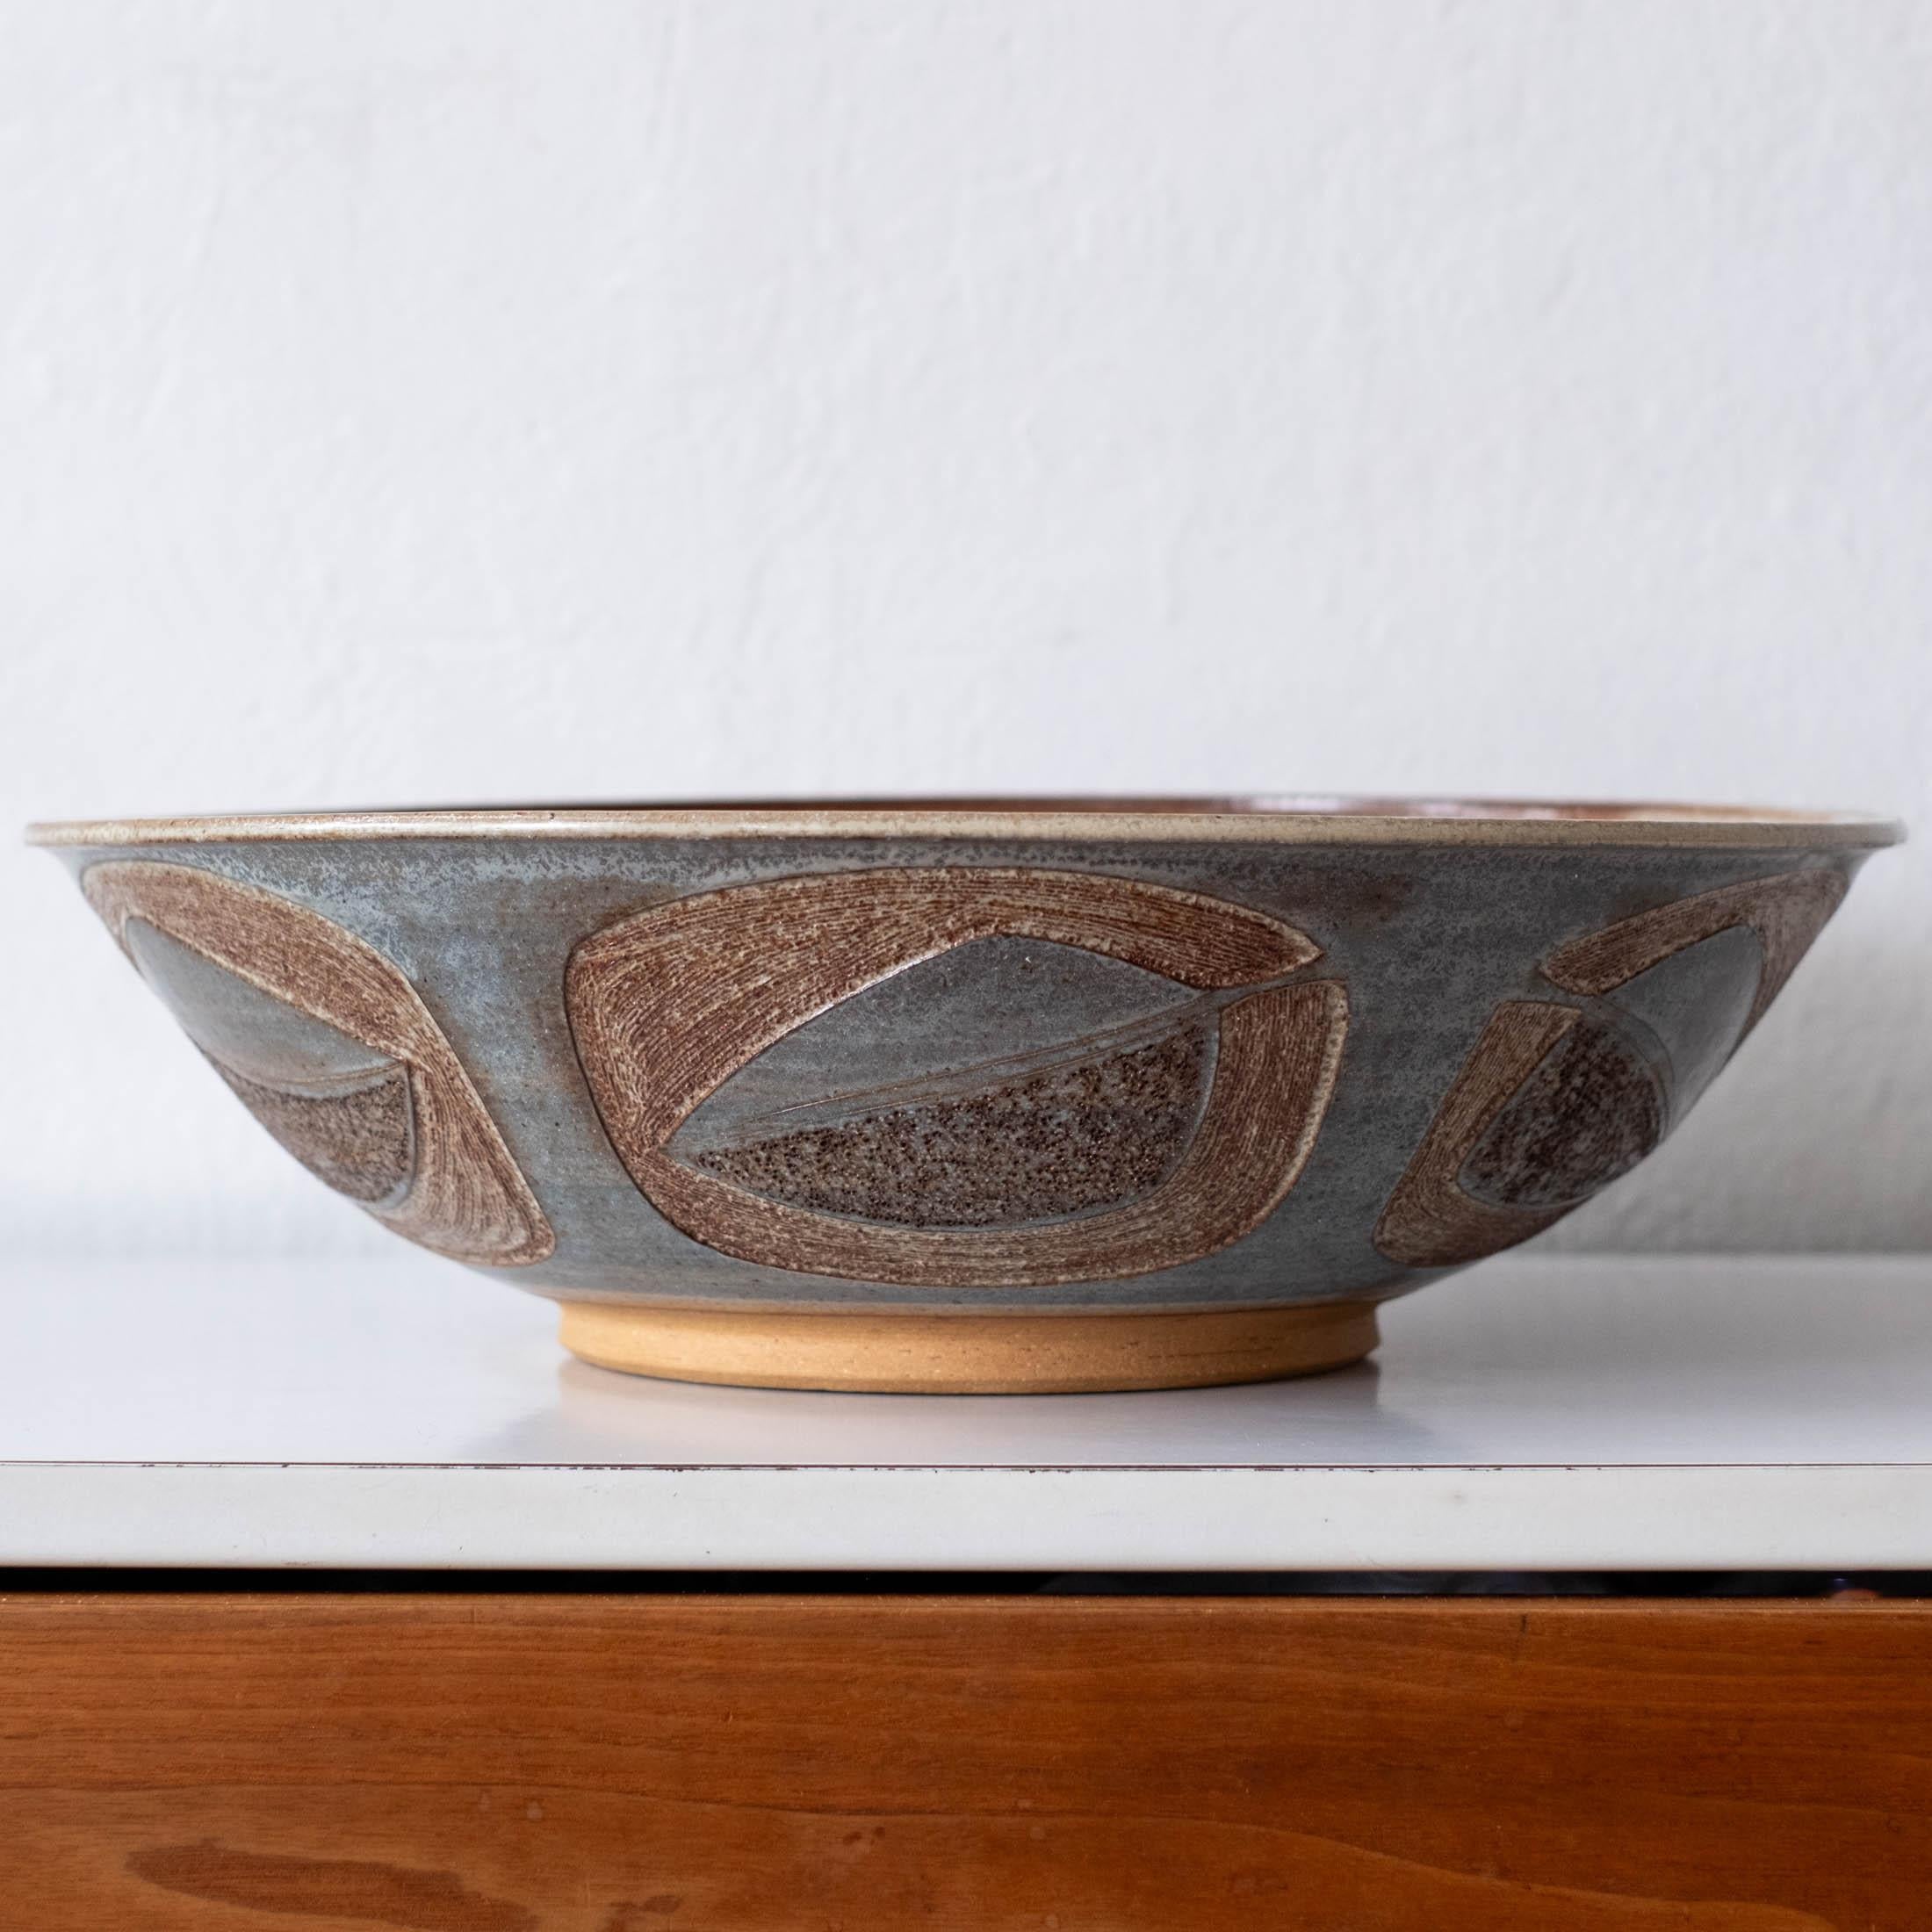 Grand bol en céramique du milieu du siècle avec un motif incisé répété. Porte ce qui semble être une signature japonaise. 1960s